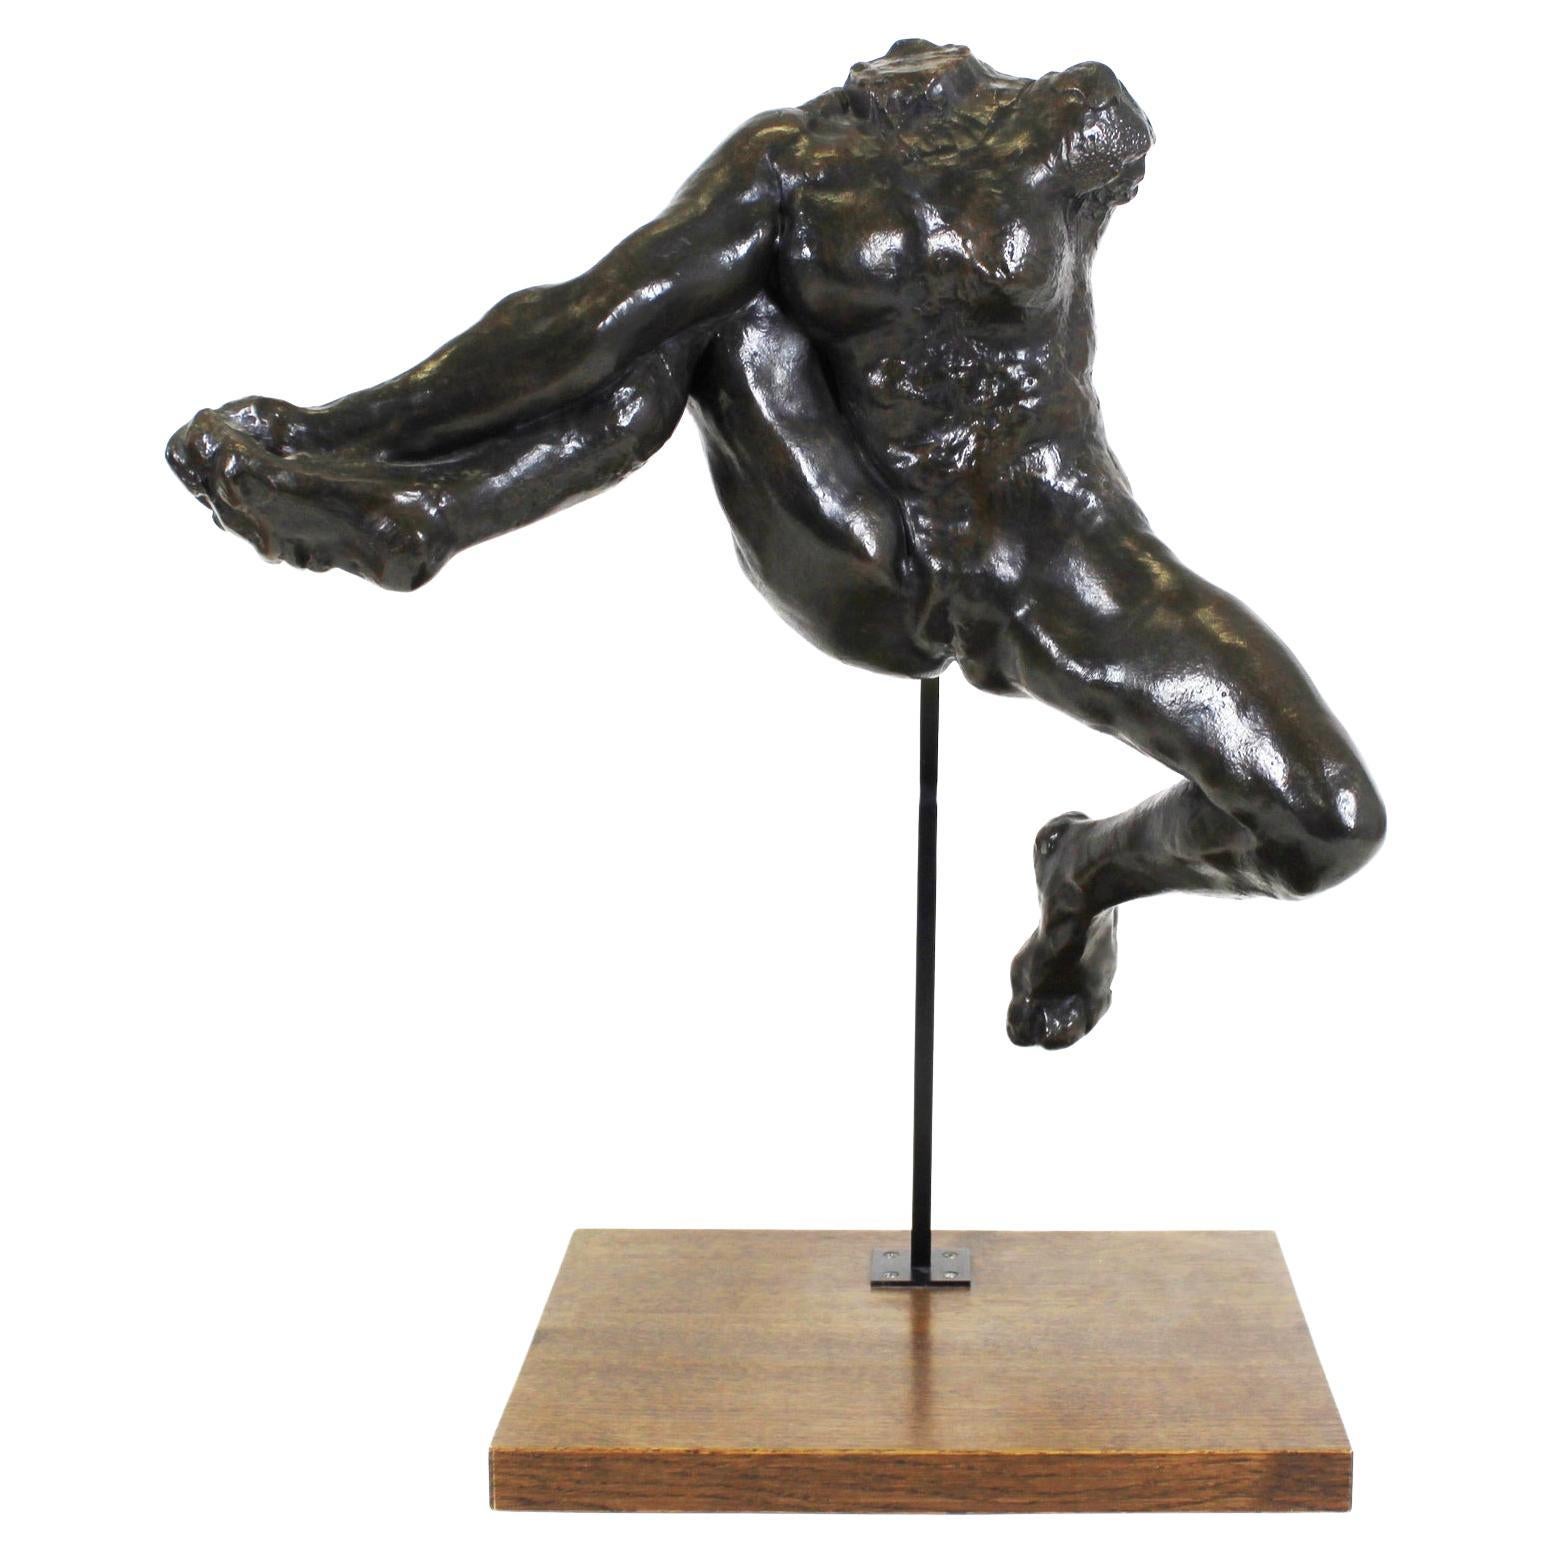 Réplique de Rodin « Iris, Messenger of the Gods » (Le messager des dieux)